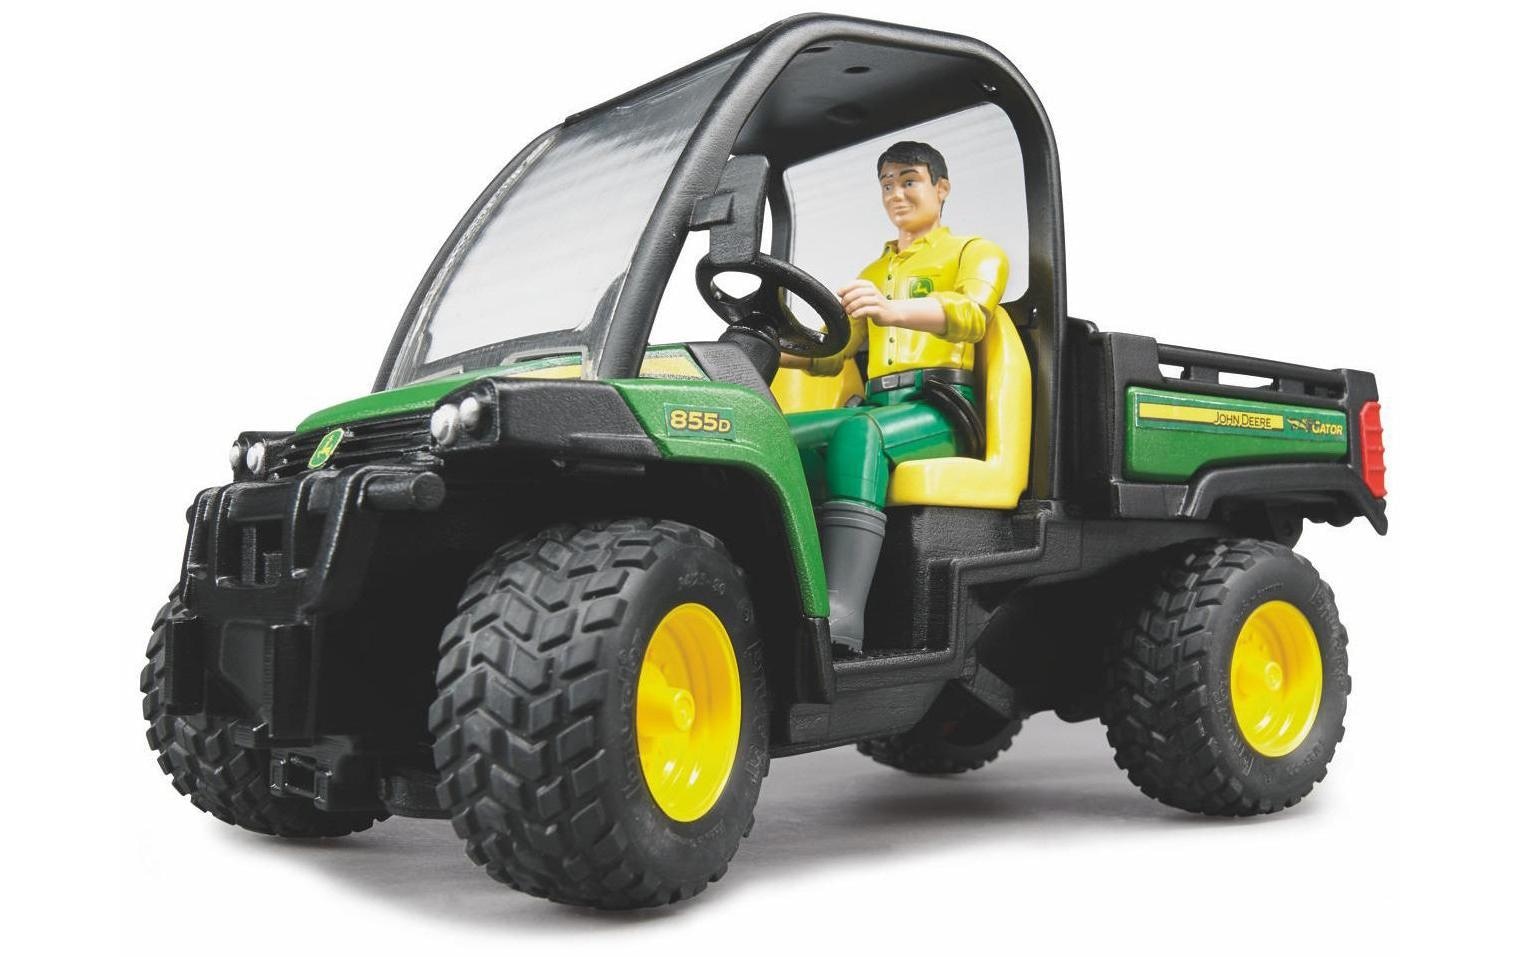 Spielzeug-Traktor »John Deere Gator 8550 mit Fahrer«